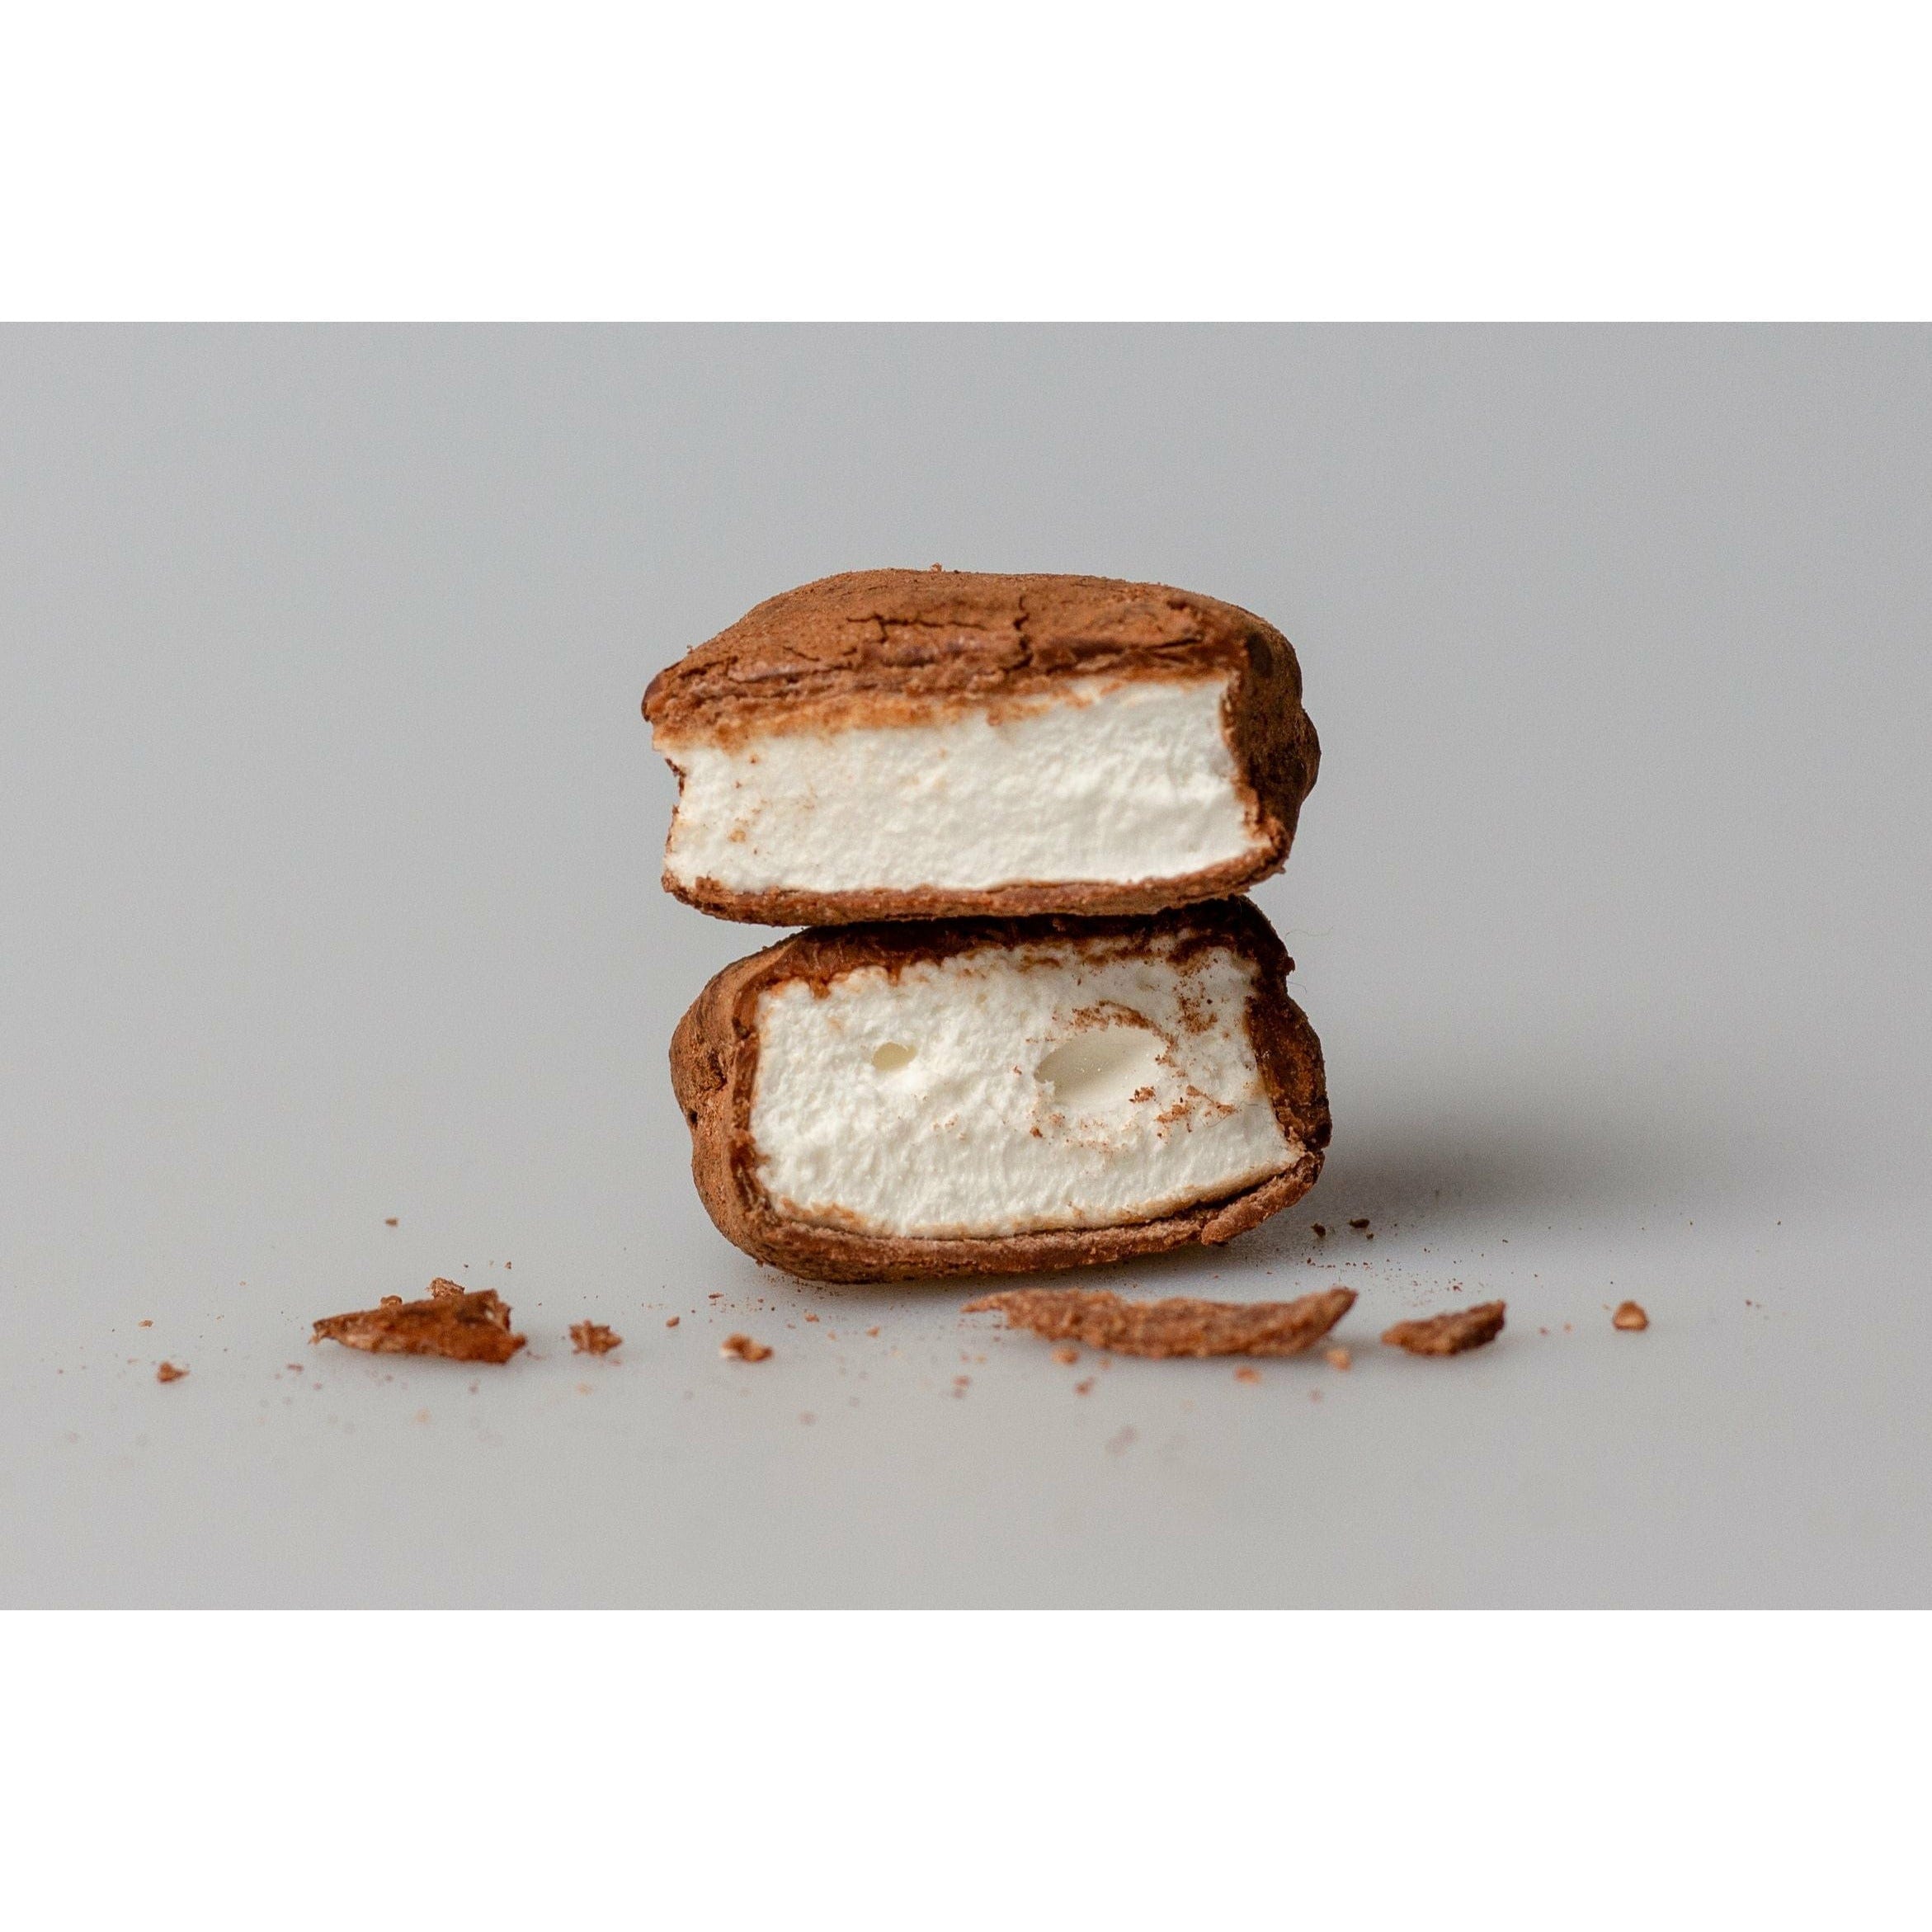 The Mallows Marshmallows med saltet karamel og chokolade, 90 g